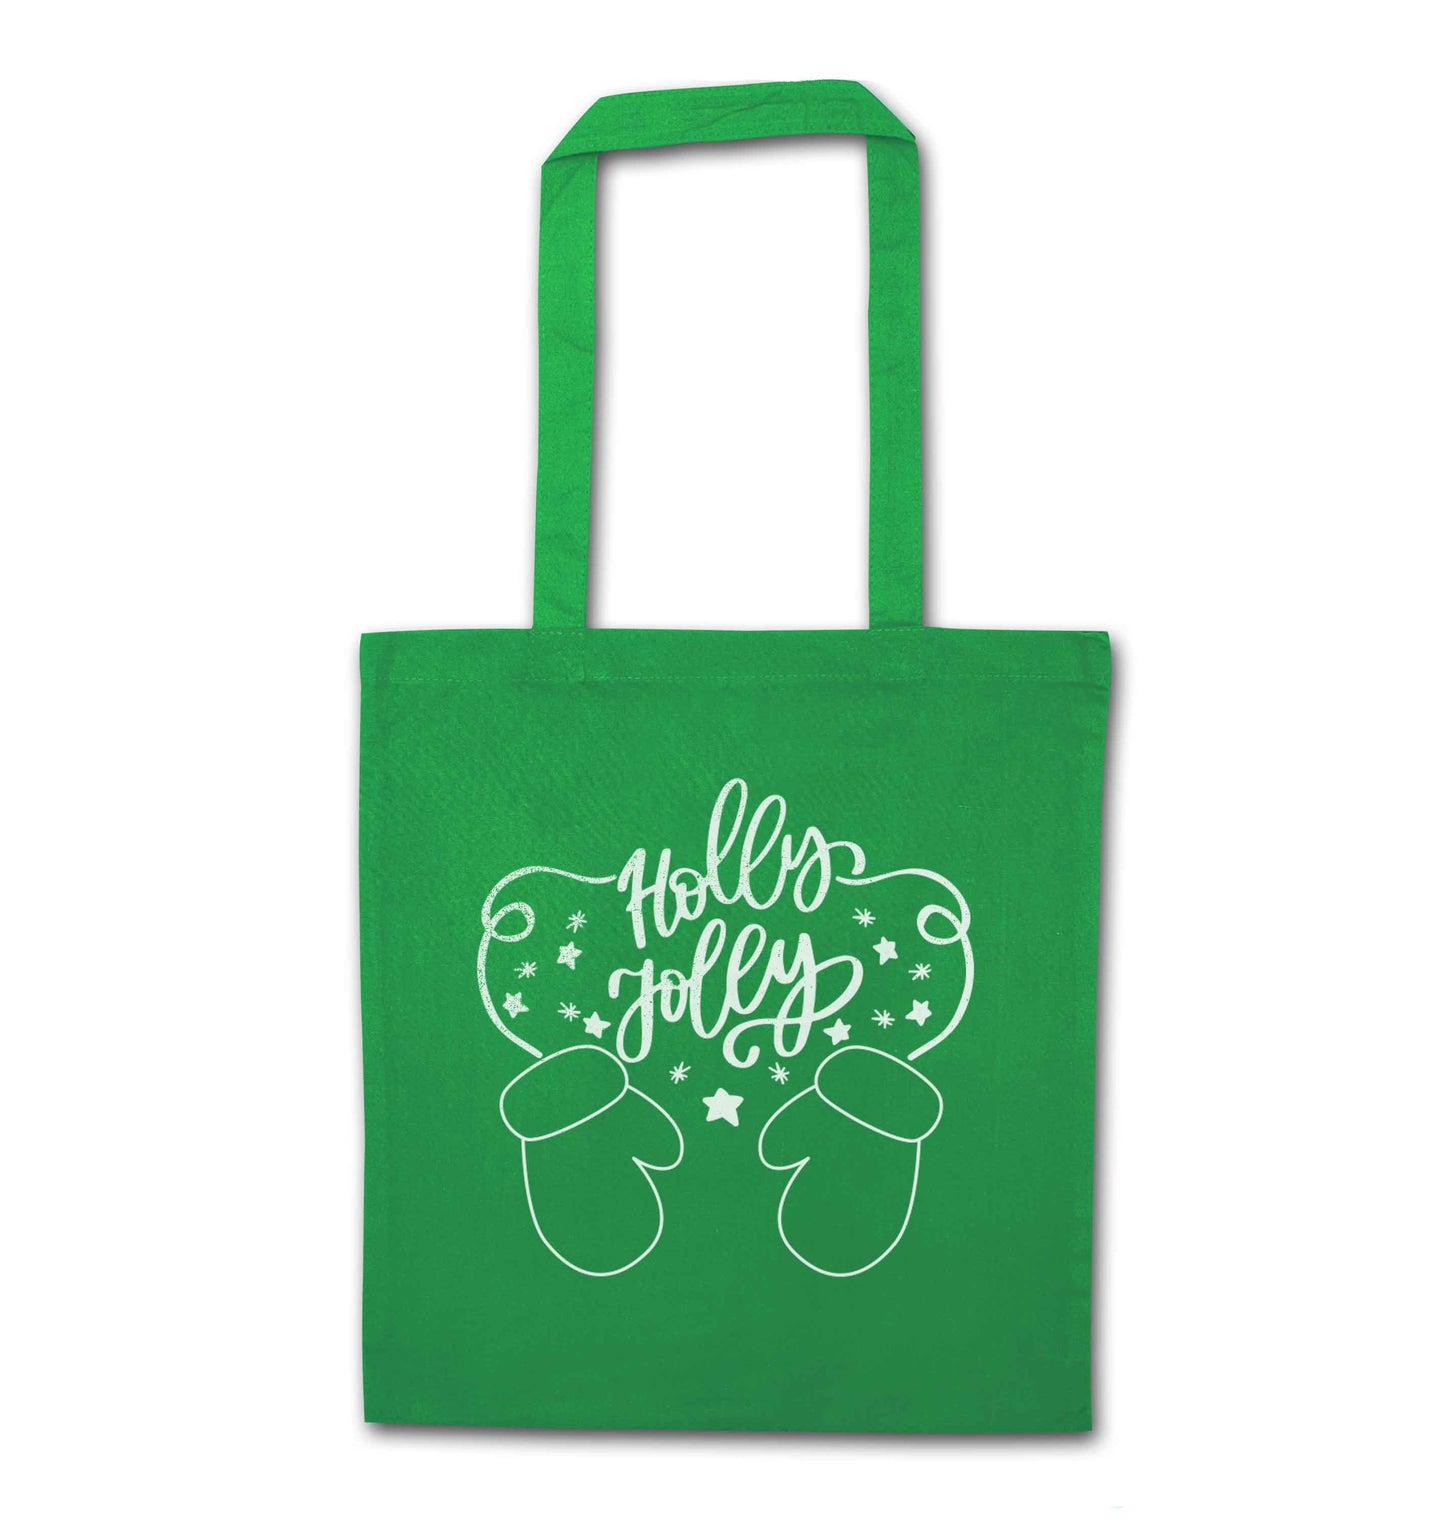 Holly jolly green tote bag